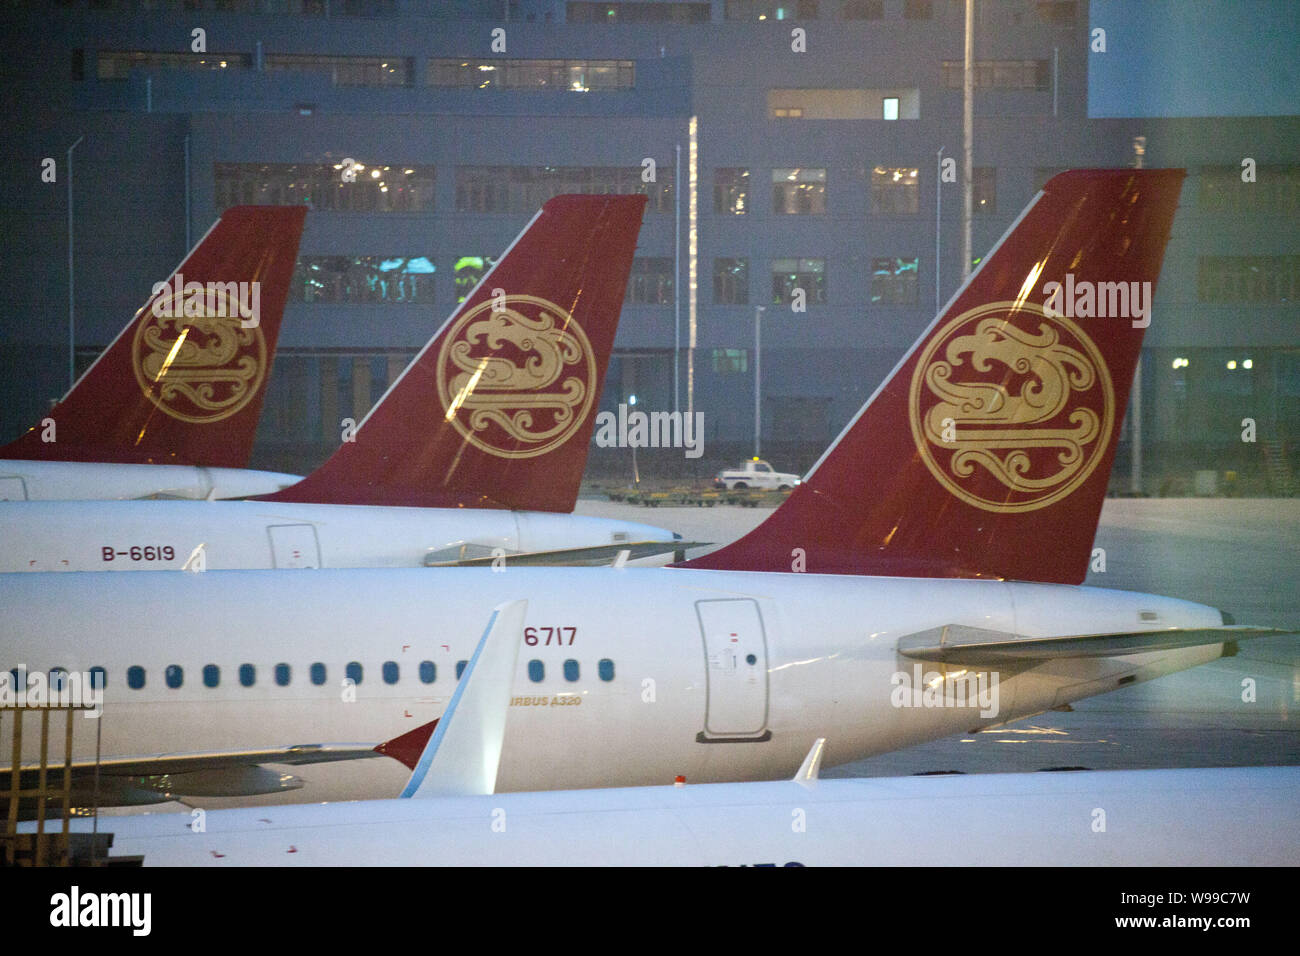 --Archivo-aviones de línea aérea Juneyao son vistos en el aeropuerto de Shanghai Hongqiao en Shanghai, China, 11 de enero de 2011. Chinas Juneyao Airlines fue castigar Foto de stock